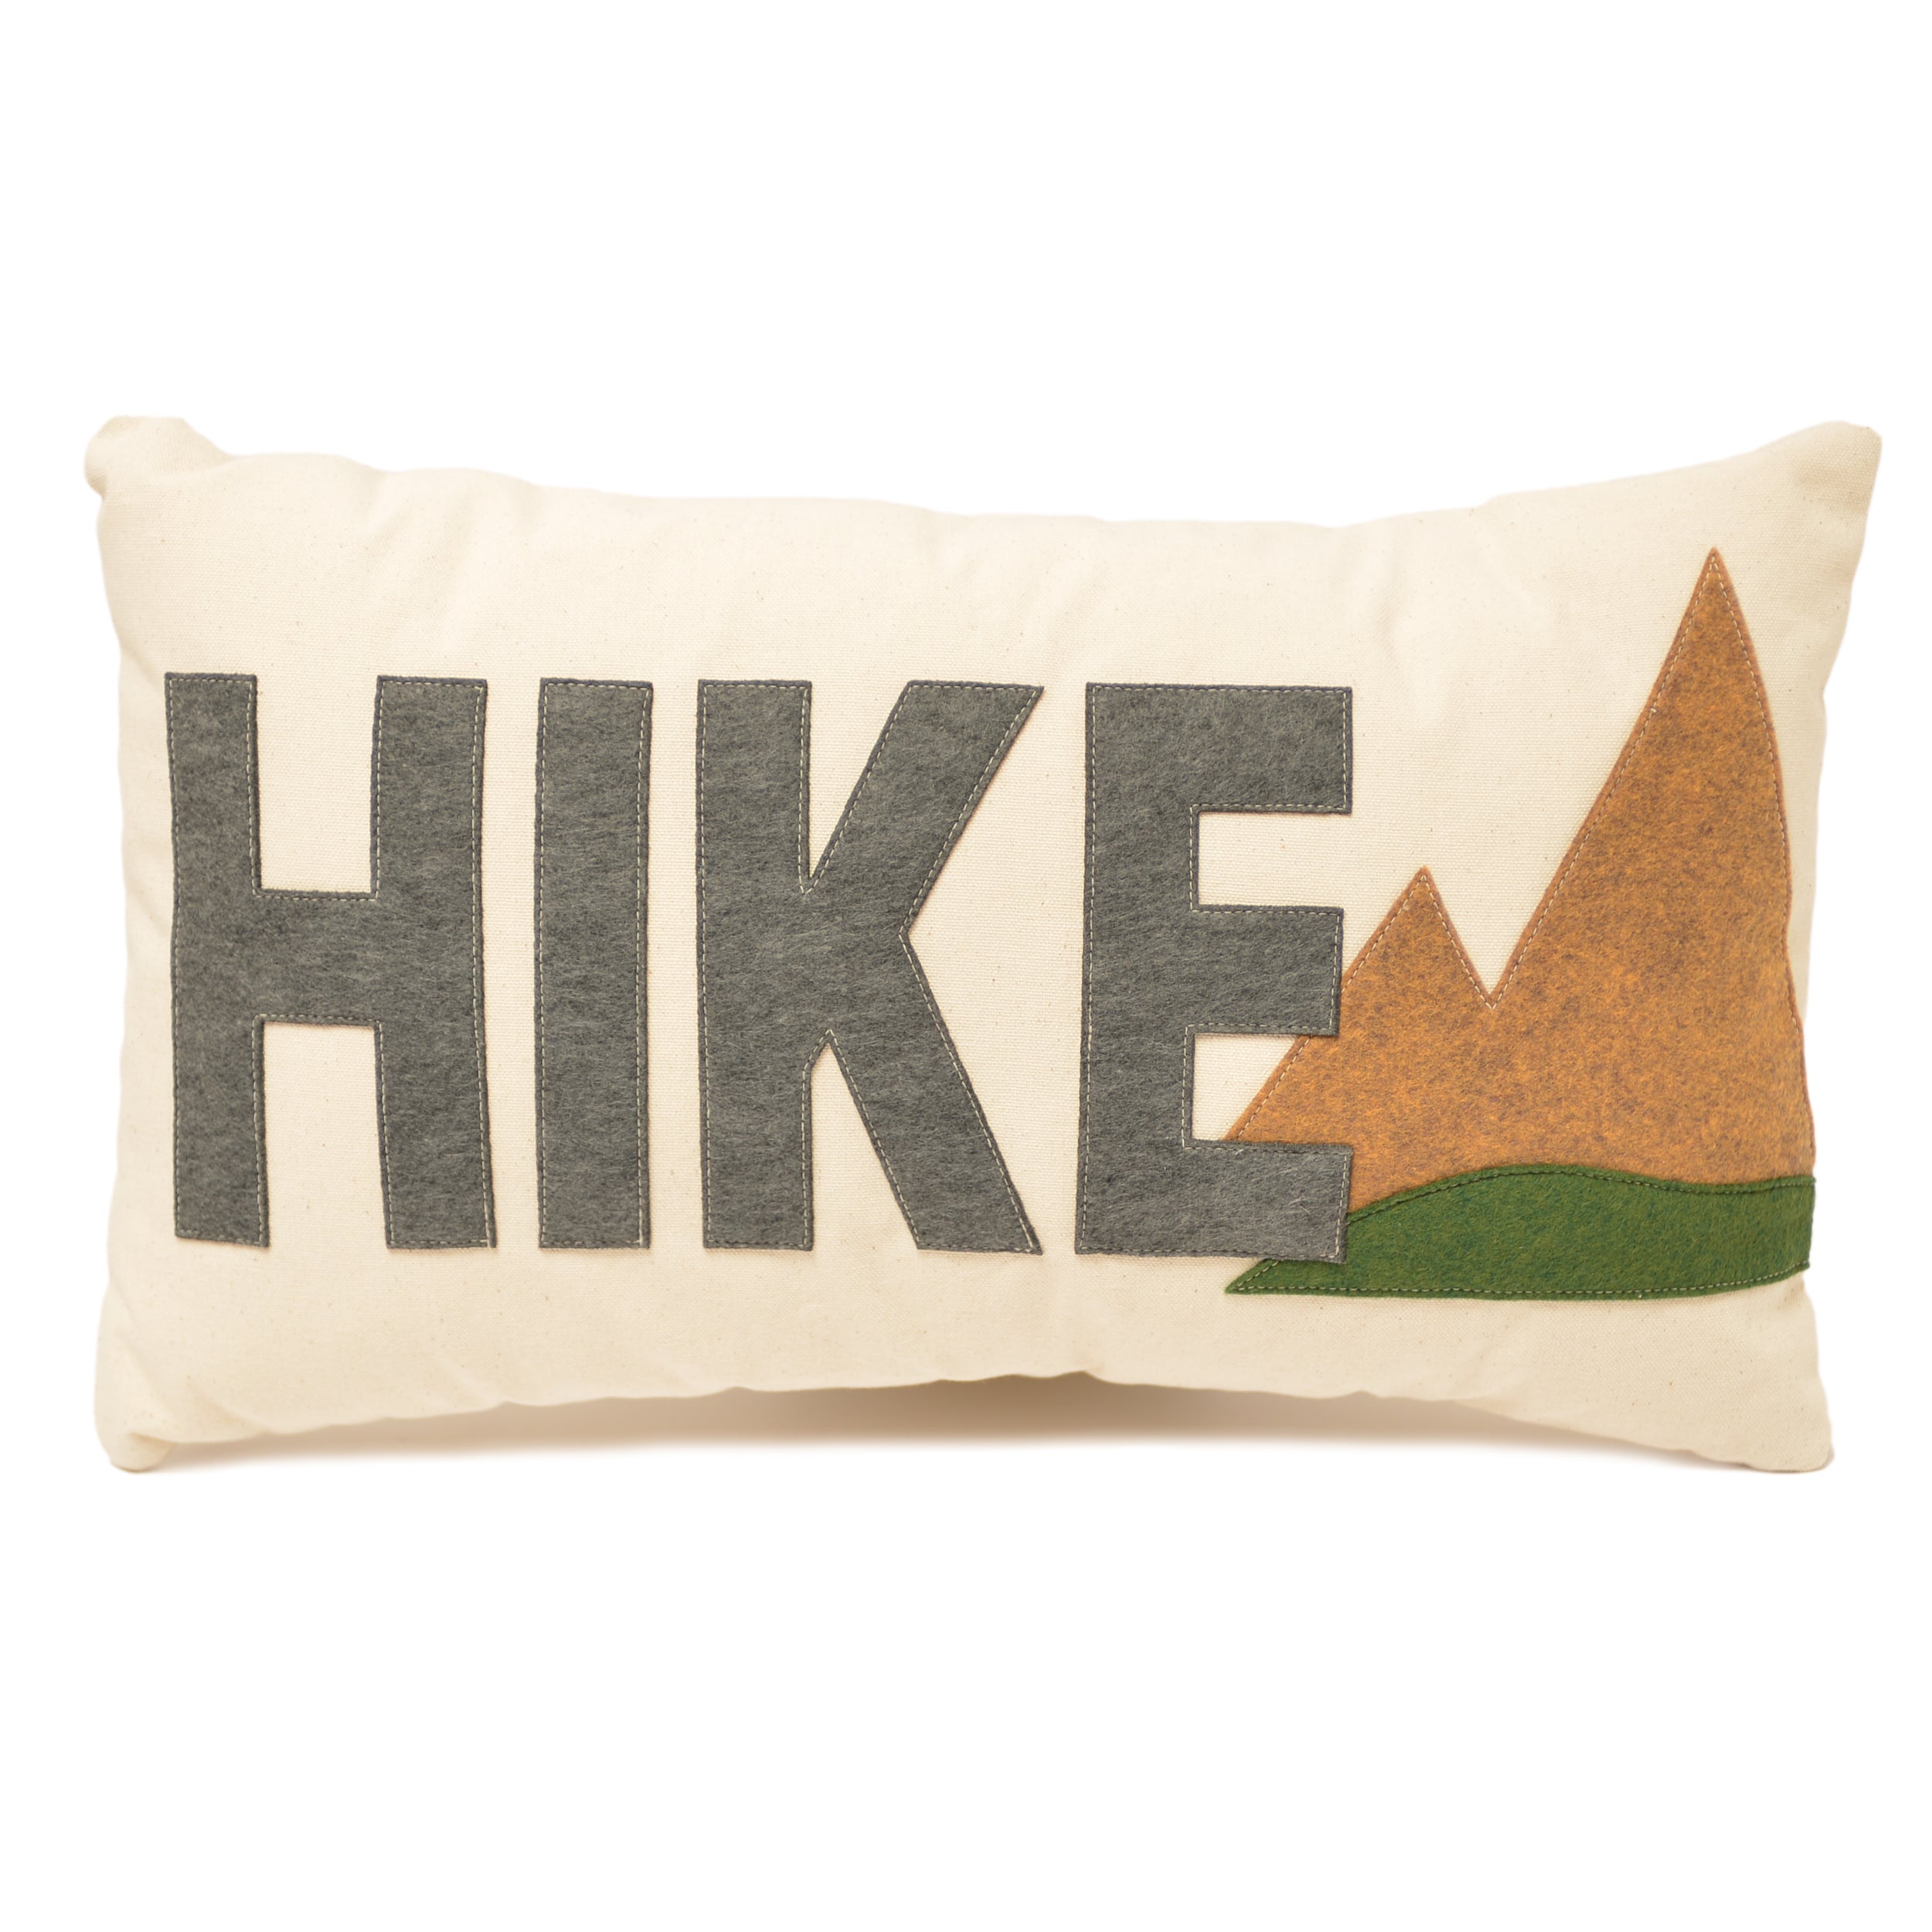 14x21" HIKE lumbar pillow with summer mountains